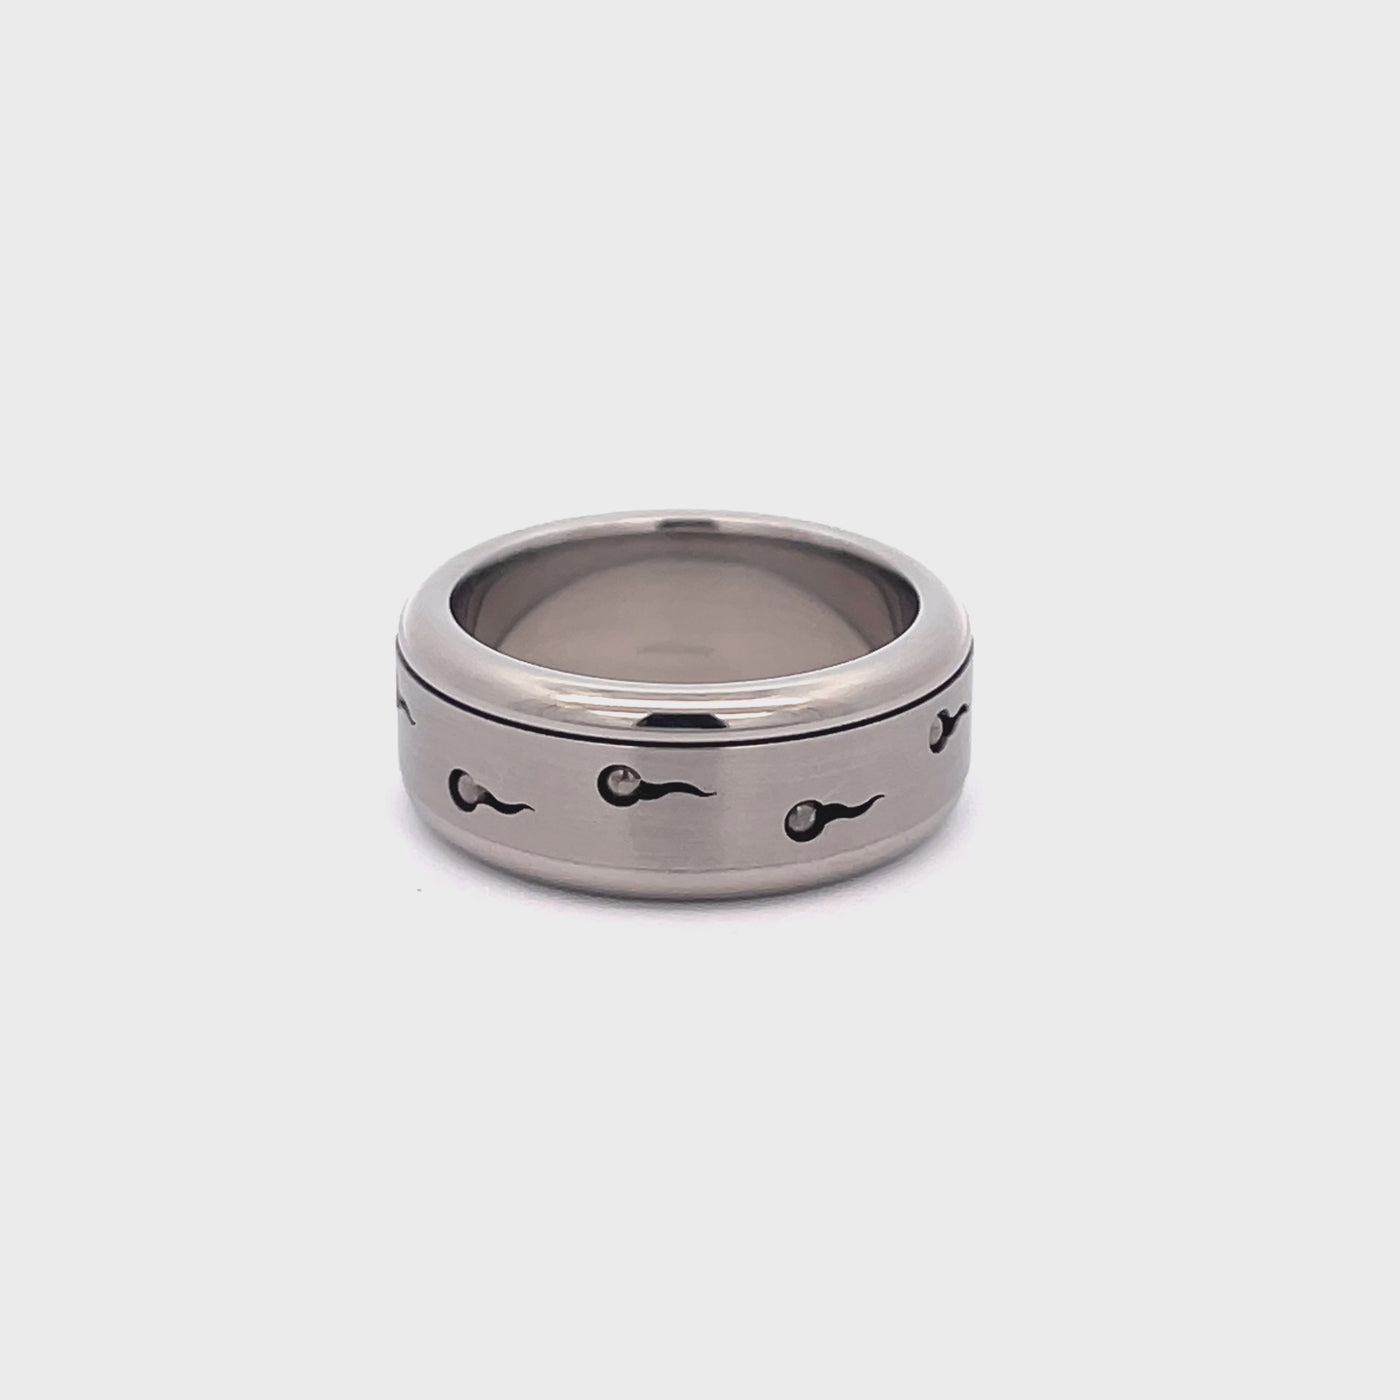 10mm Stainless Steel Spinner Ring